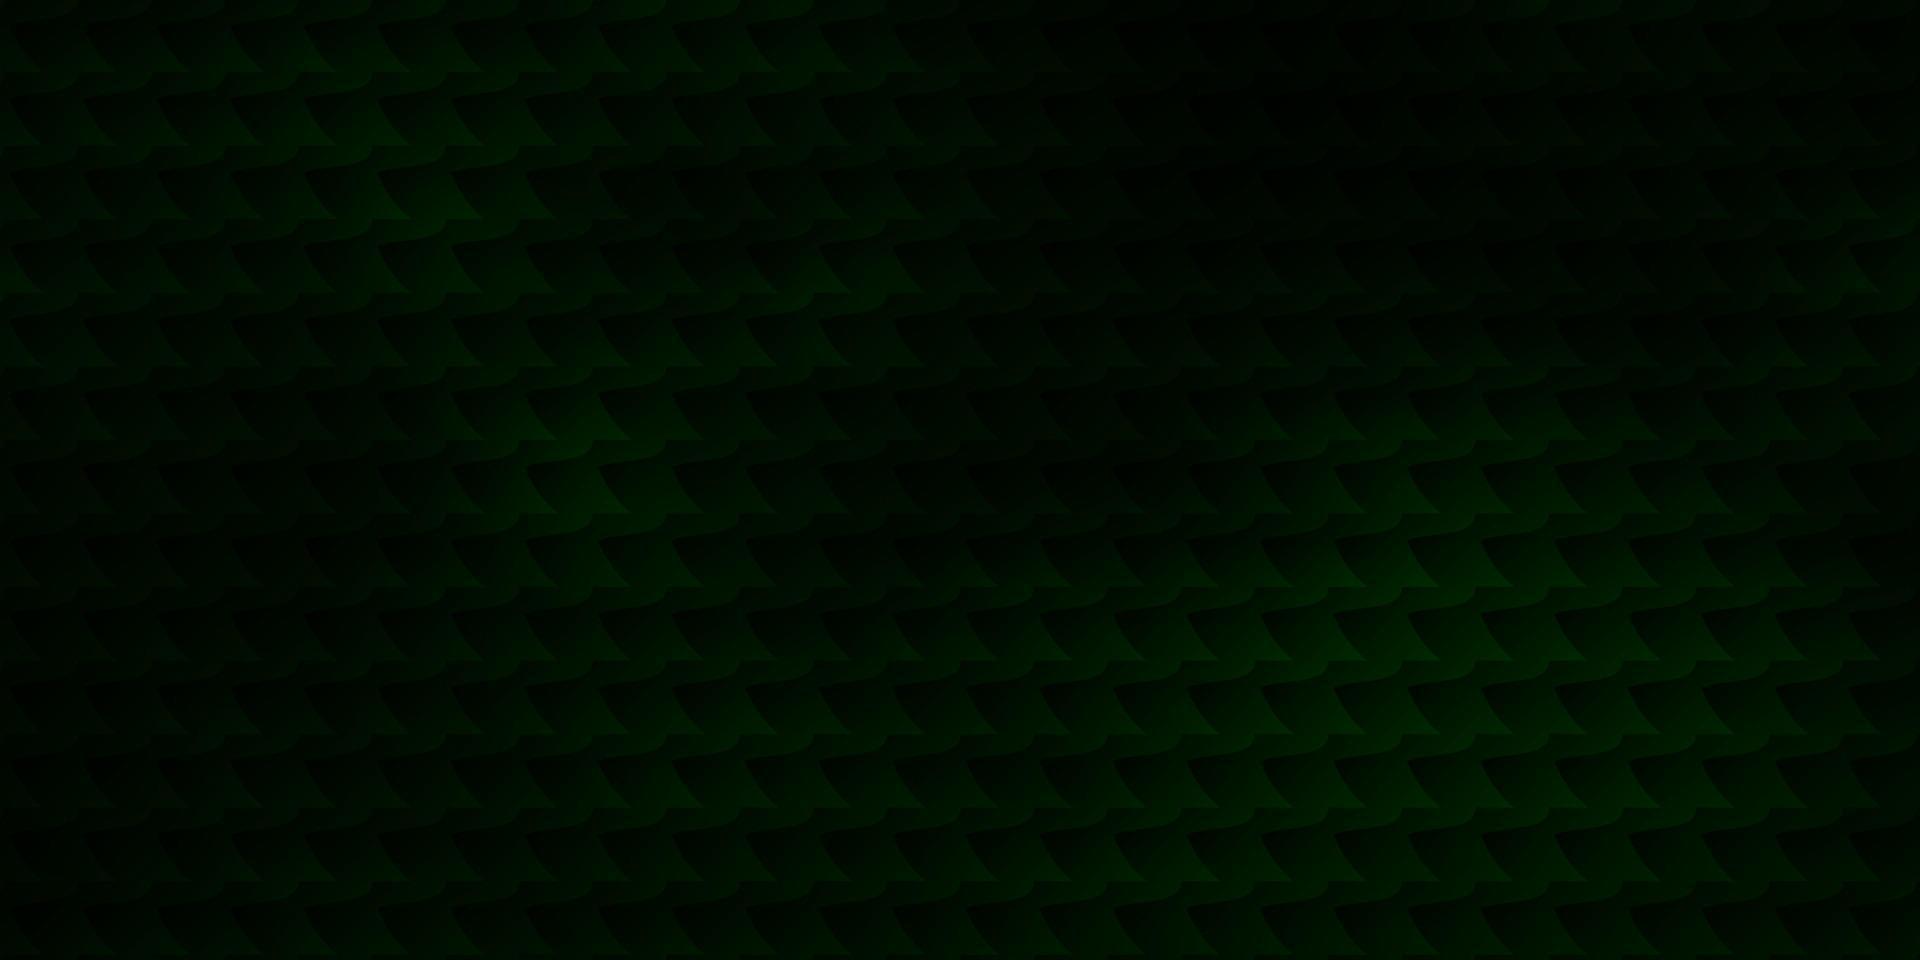 modèle vectoriel vert foncé dans un style carré.